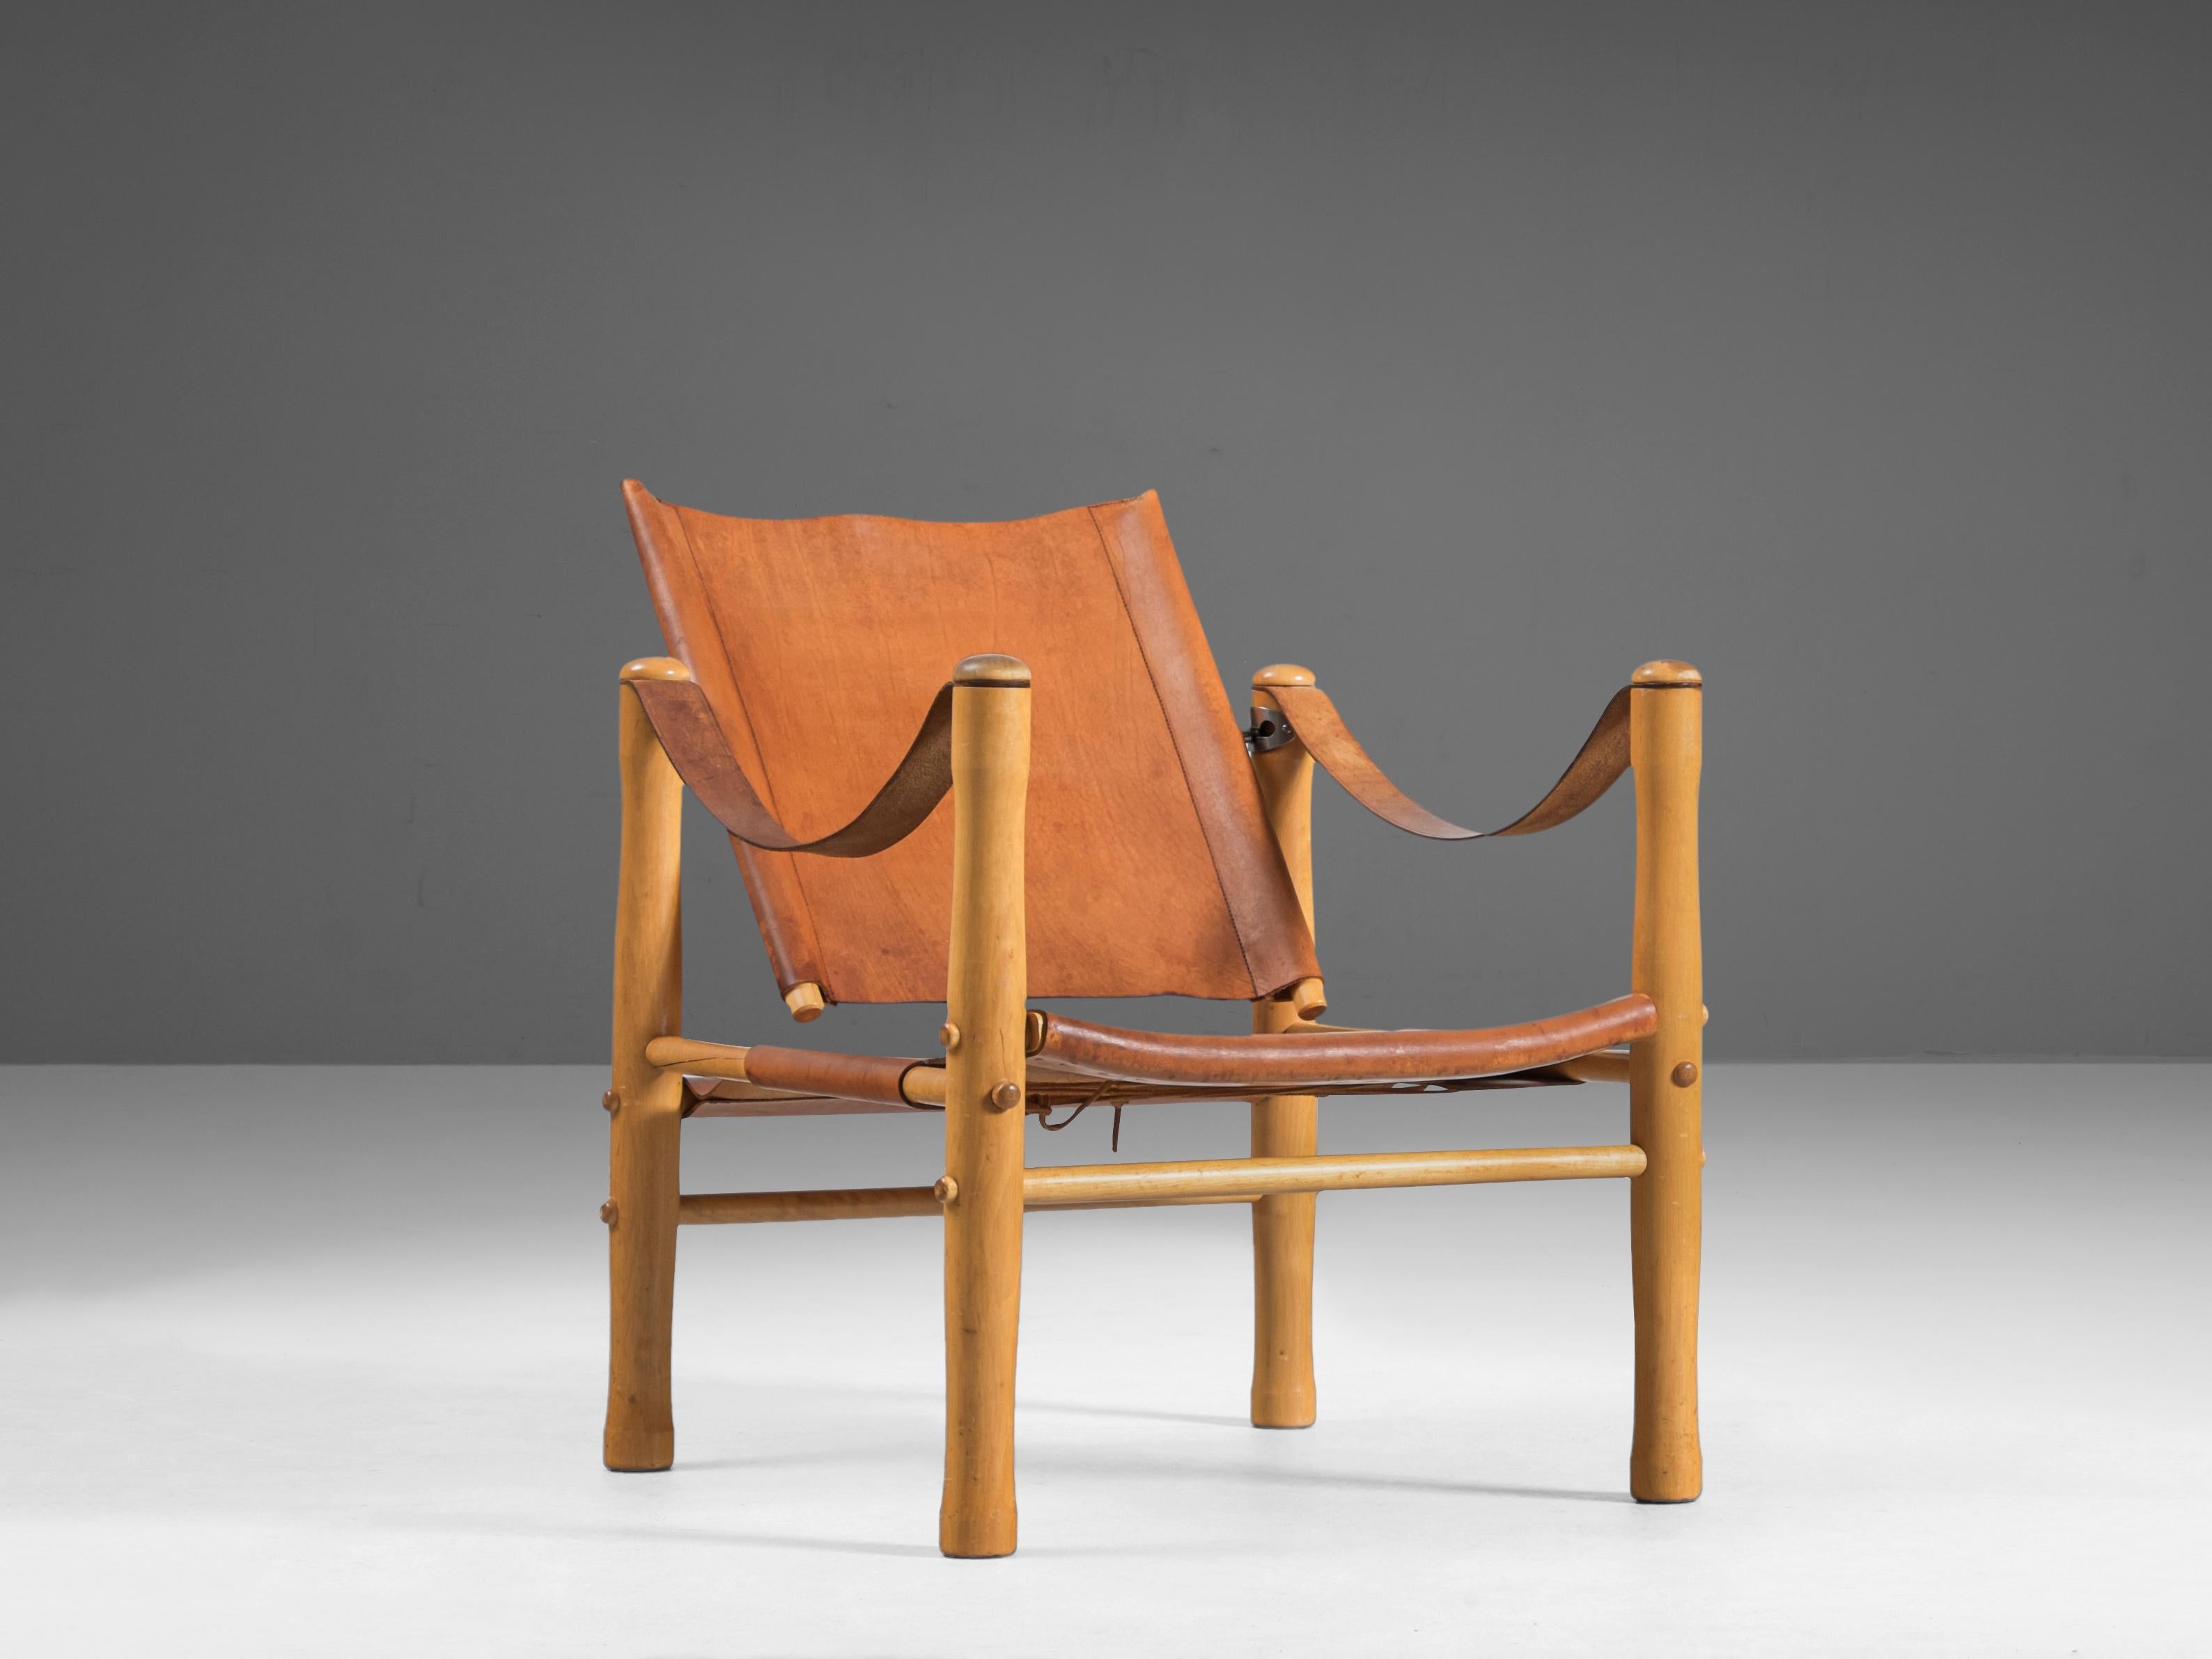 Nordiska Kompaniet, Sessel, Leder, Birke, Schweden, 1950er Jahre

Dieser elegante Safari-Sessel ist aus natürlichem cognacbraunem Leder gefertigt, das im Laufe der Zeit eine schöne Patina entwickelt hat, die den Charakter des Sessels noch verstärkt.